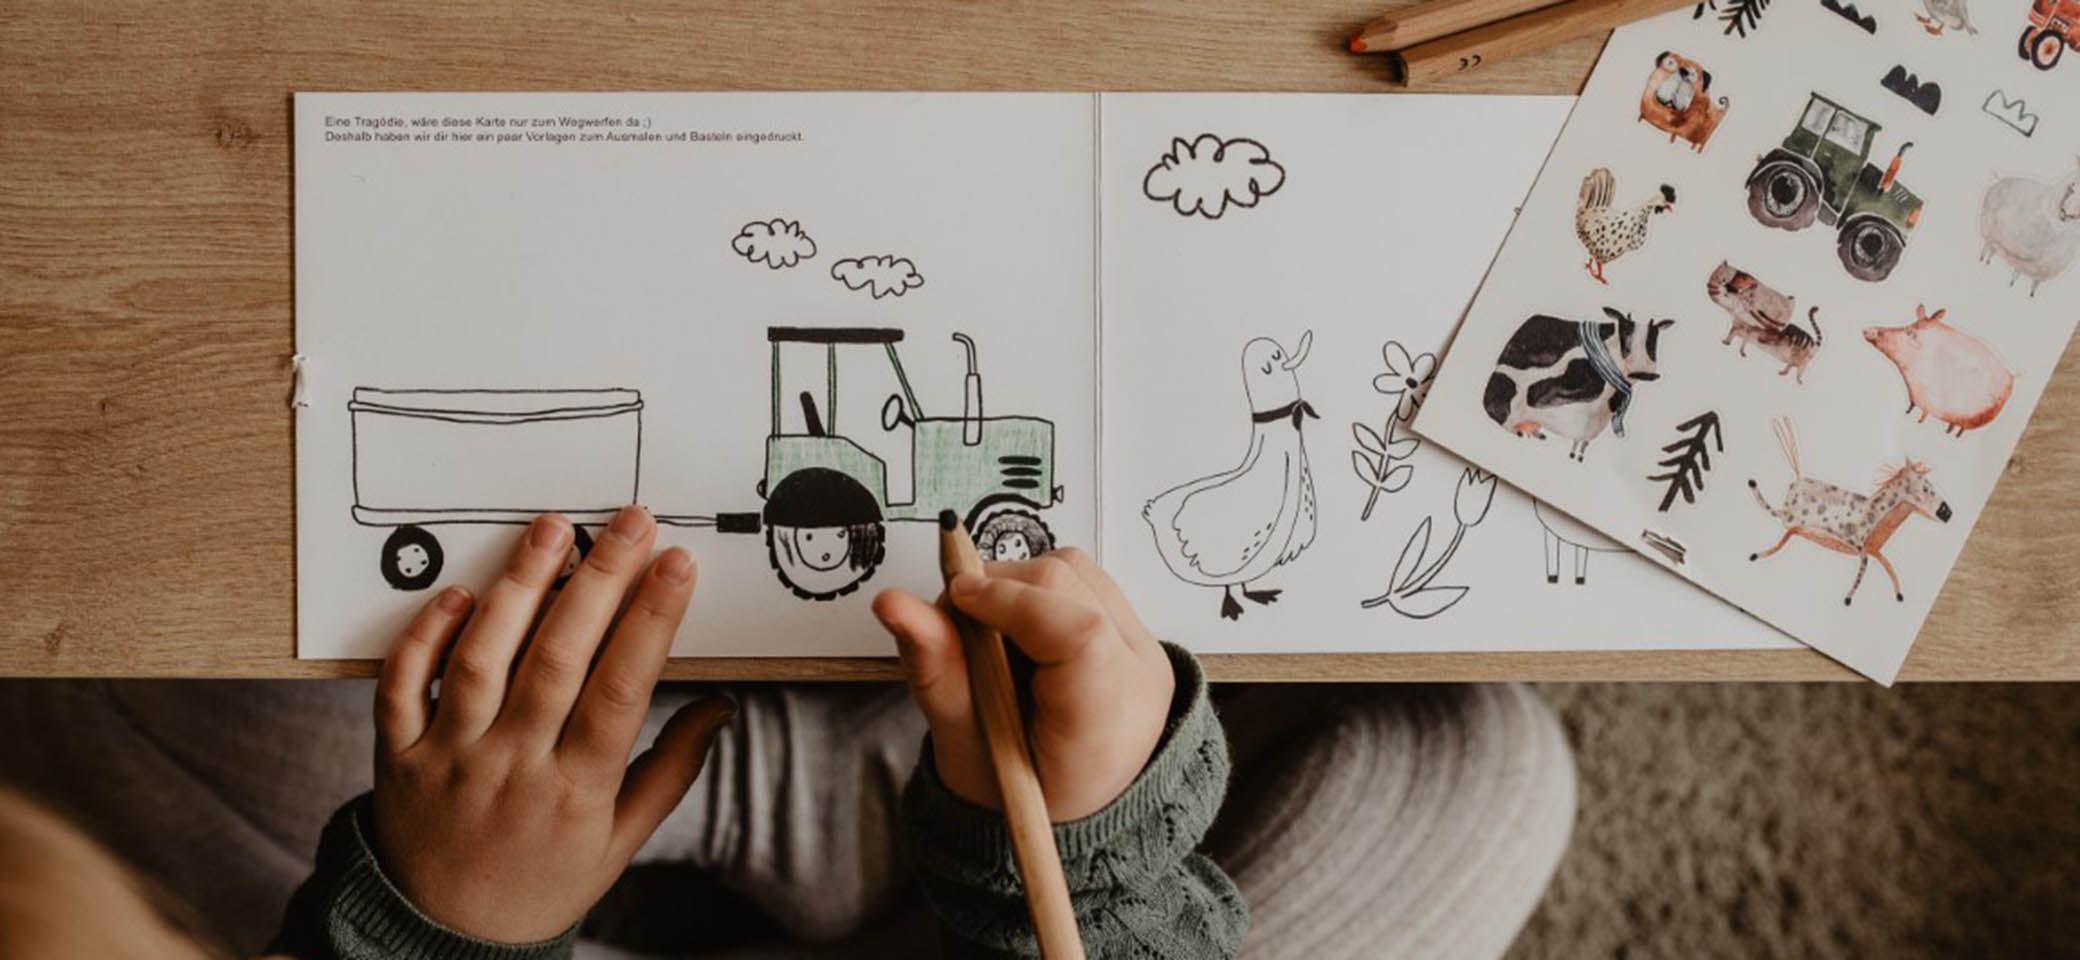 Kind malt einen Traktor aus mit buntstiften, daneben liegen auf dem tisch bauernhof sticker für die spülmaschine mit kuh, schwein, pferd, traktor, hund huhn etc.